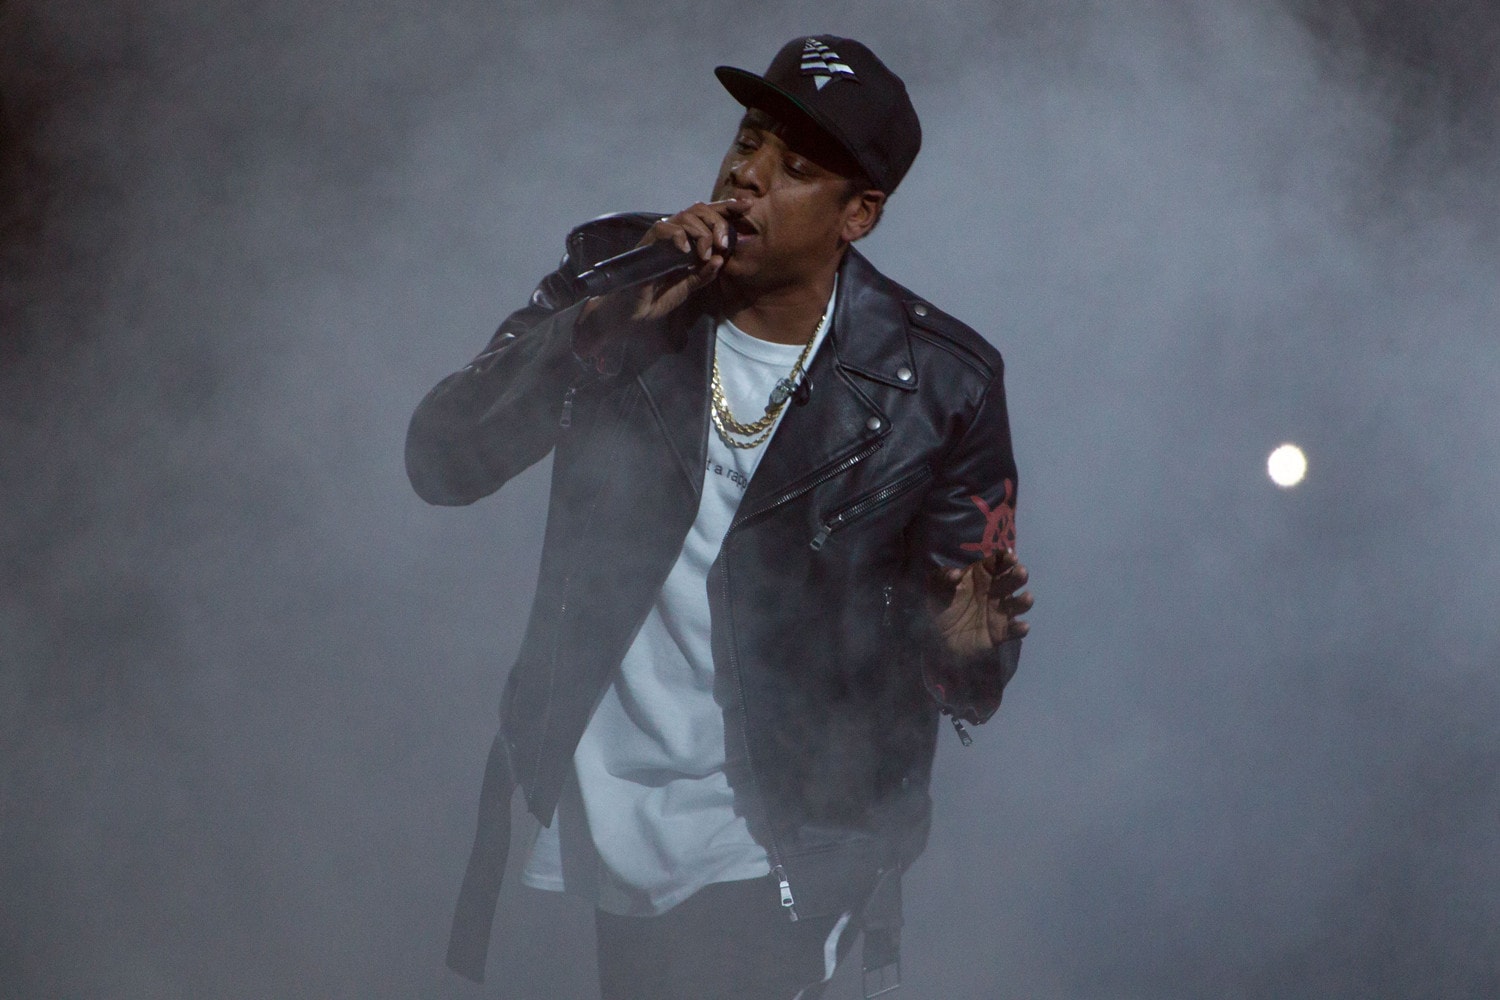 傳言 Jay-Z 試圖阻止 Travis Scott 擔任 Super Bowl 中場秀嘉賓